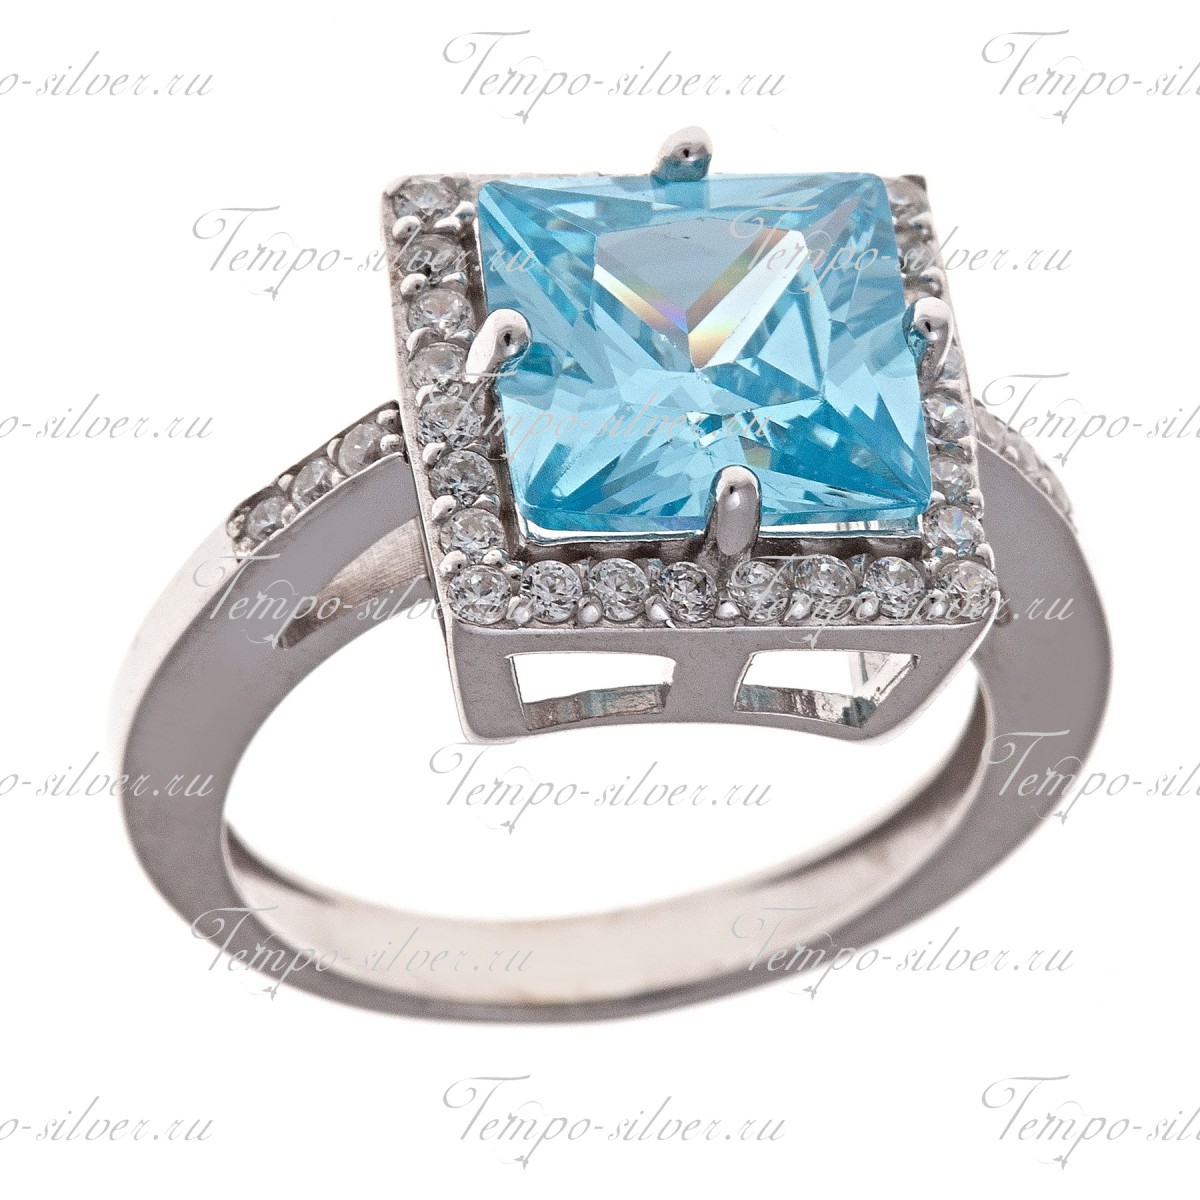 Кольцо из серебра квадратной формы с голубым камнем в окружении белых куб.цирконий  цена